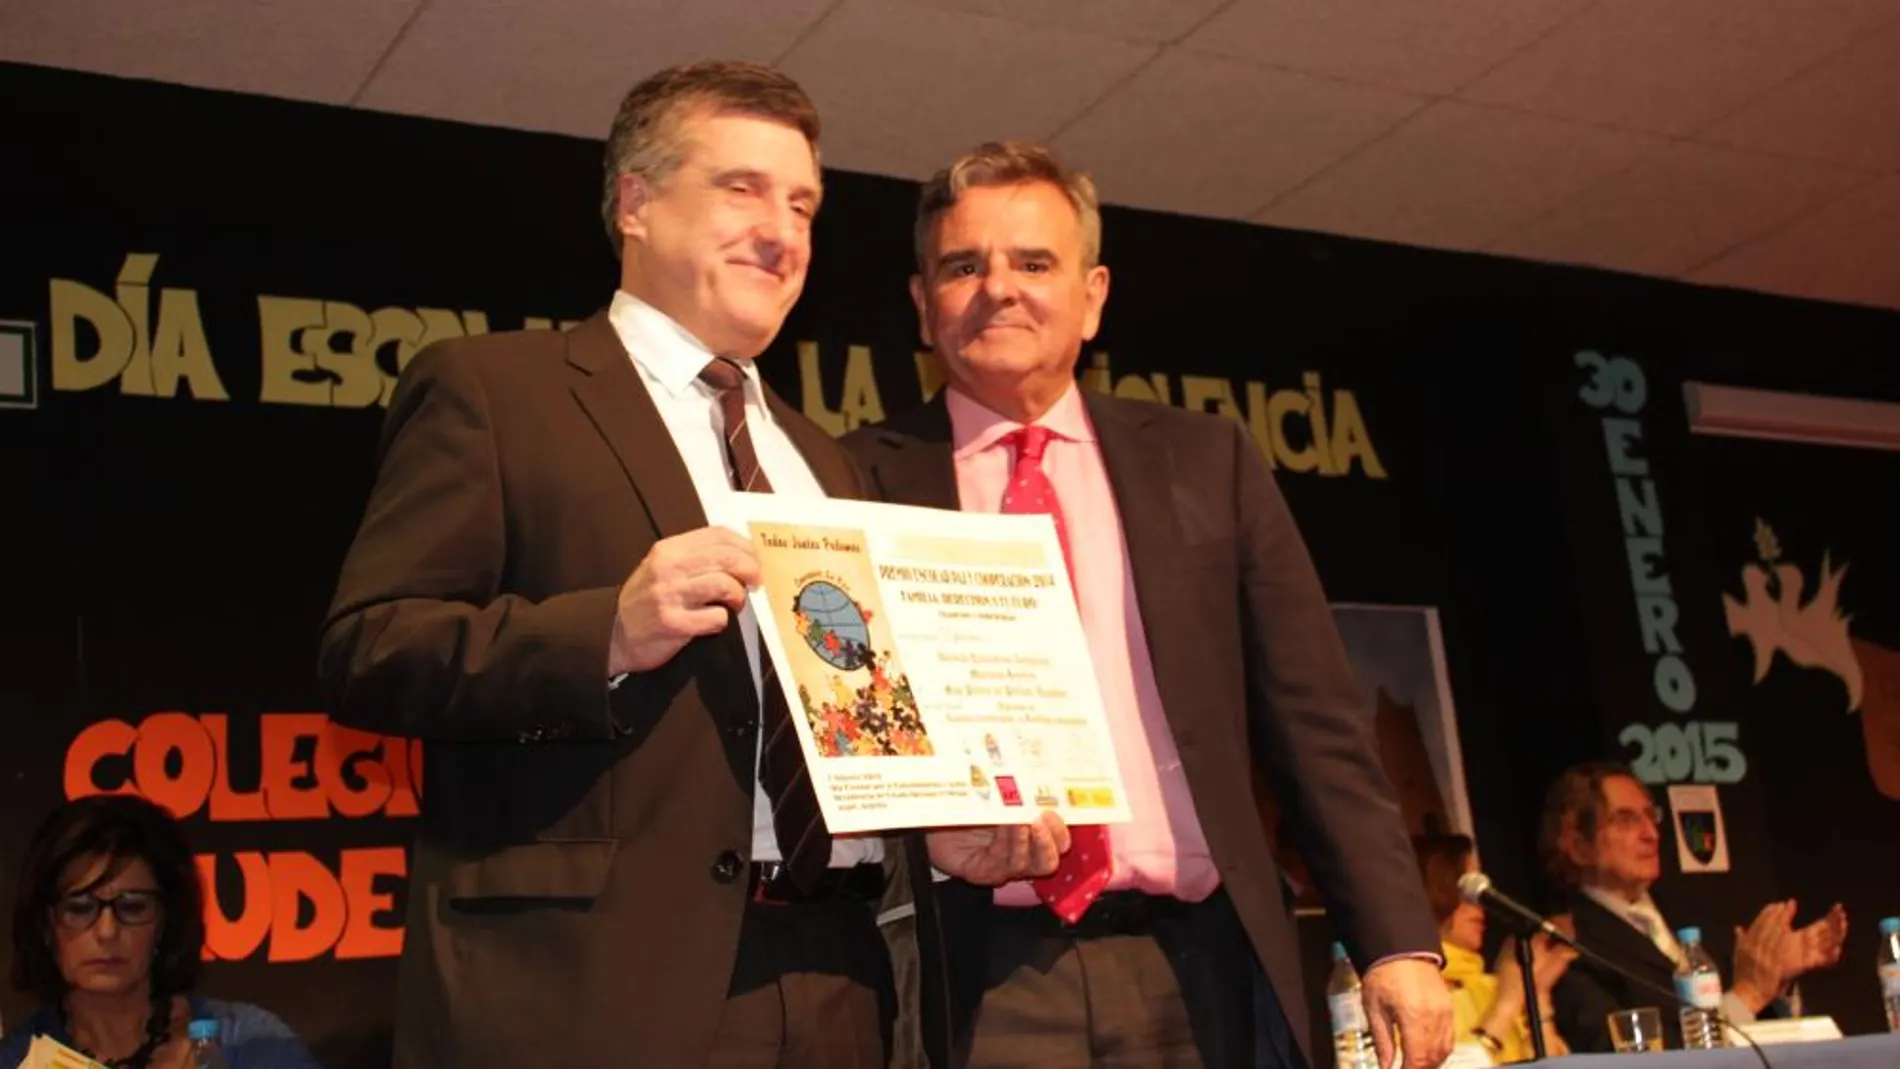 Hirukide Pablo Jesús Larrabide Bilbao luciendo el Diploma que le entregó el alcalde de Majadahonda Narciso Foxá